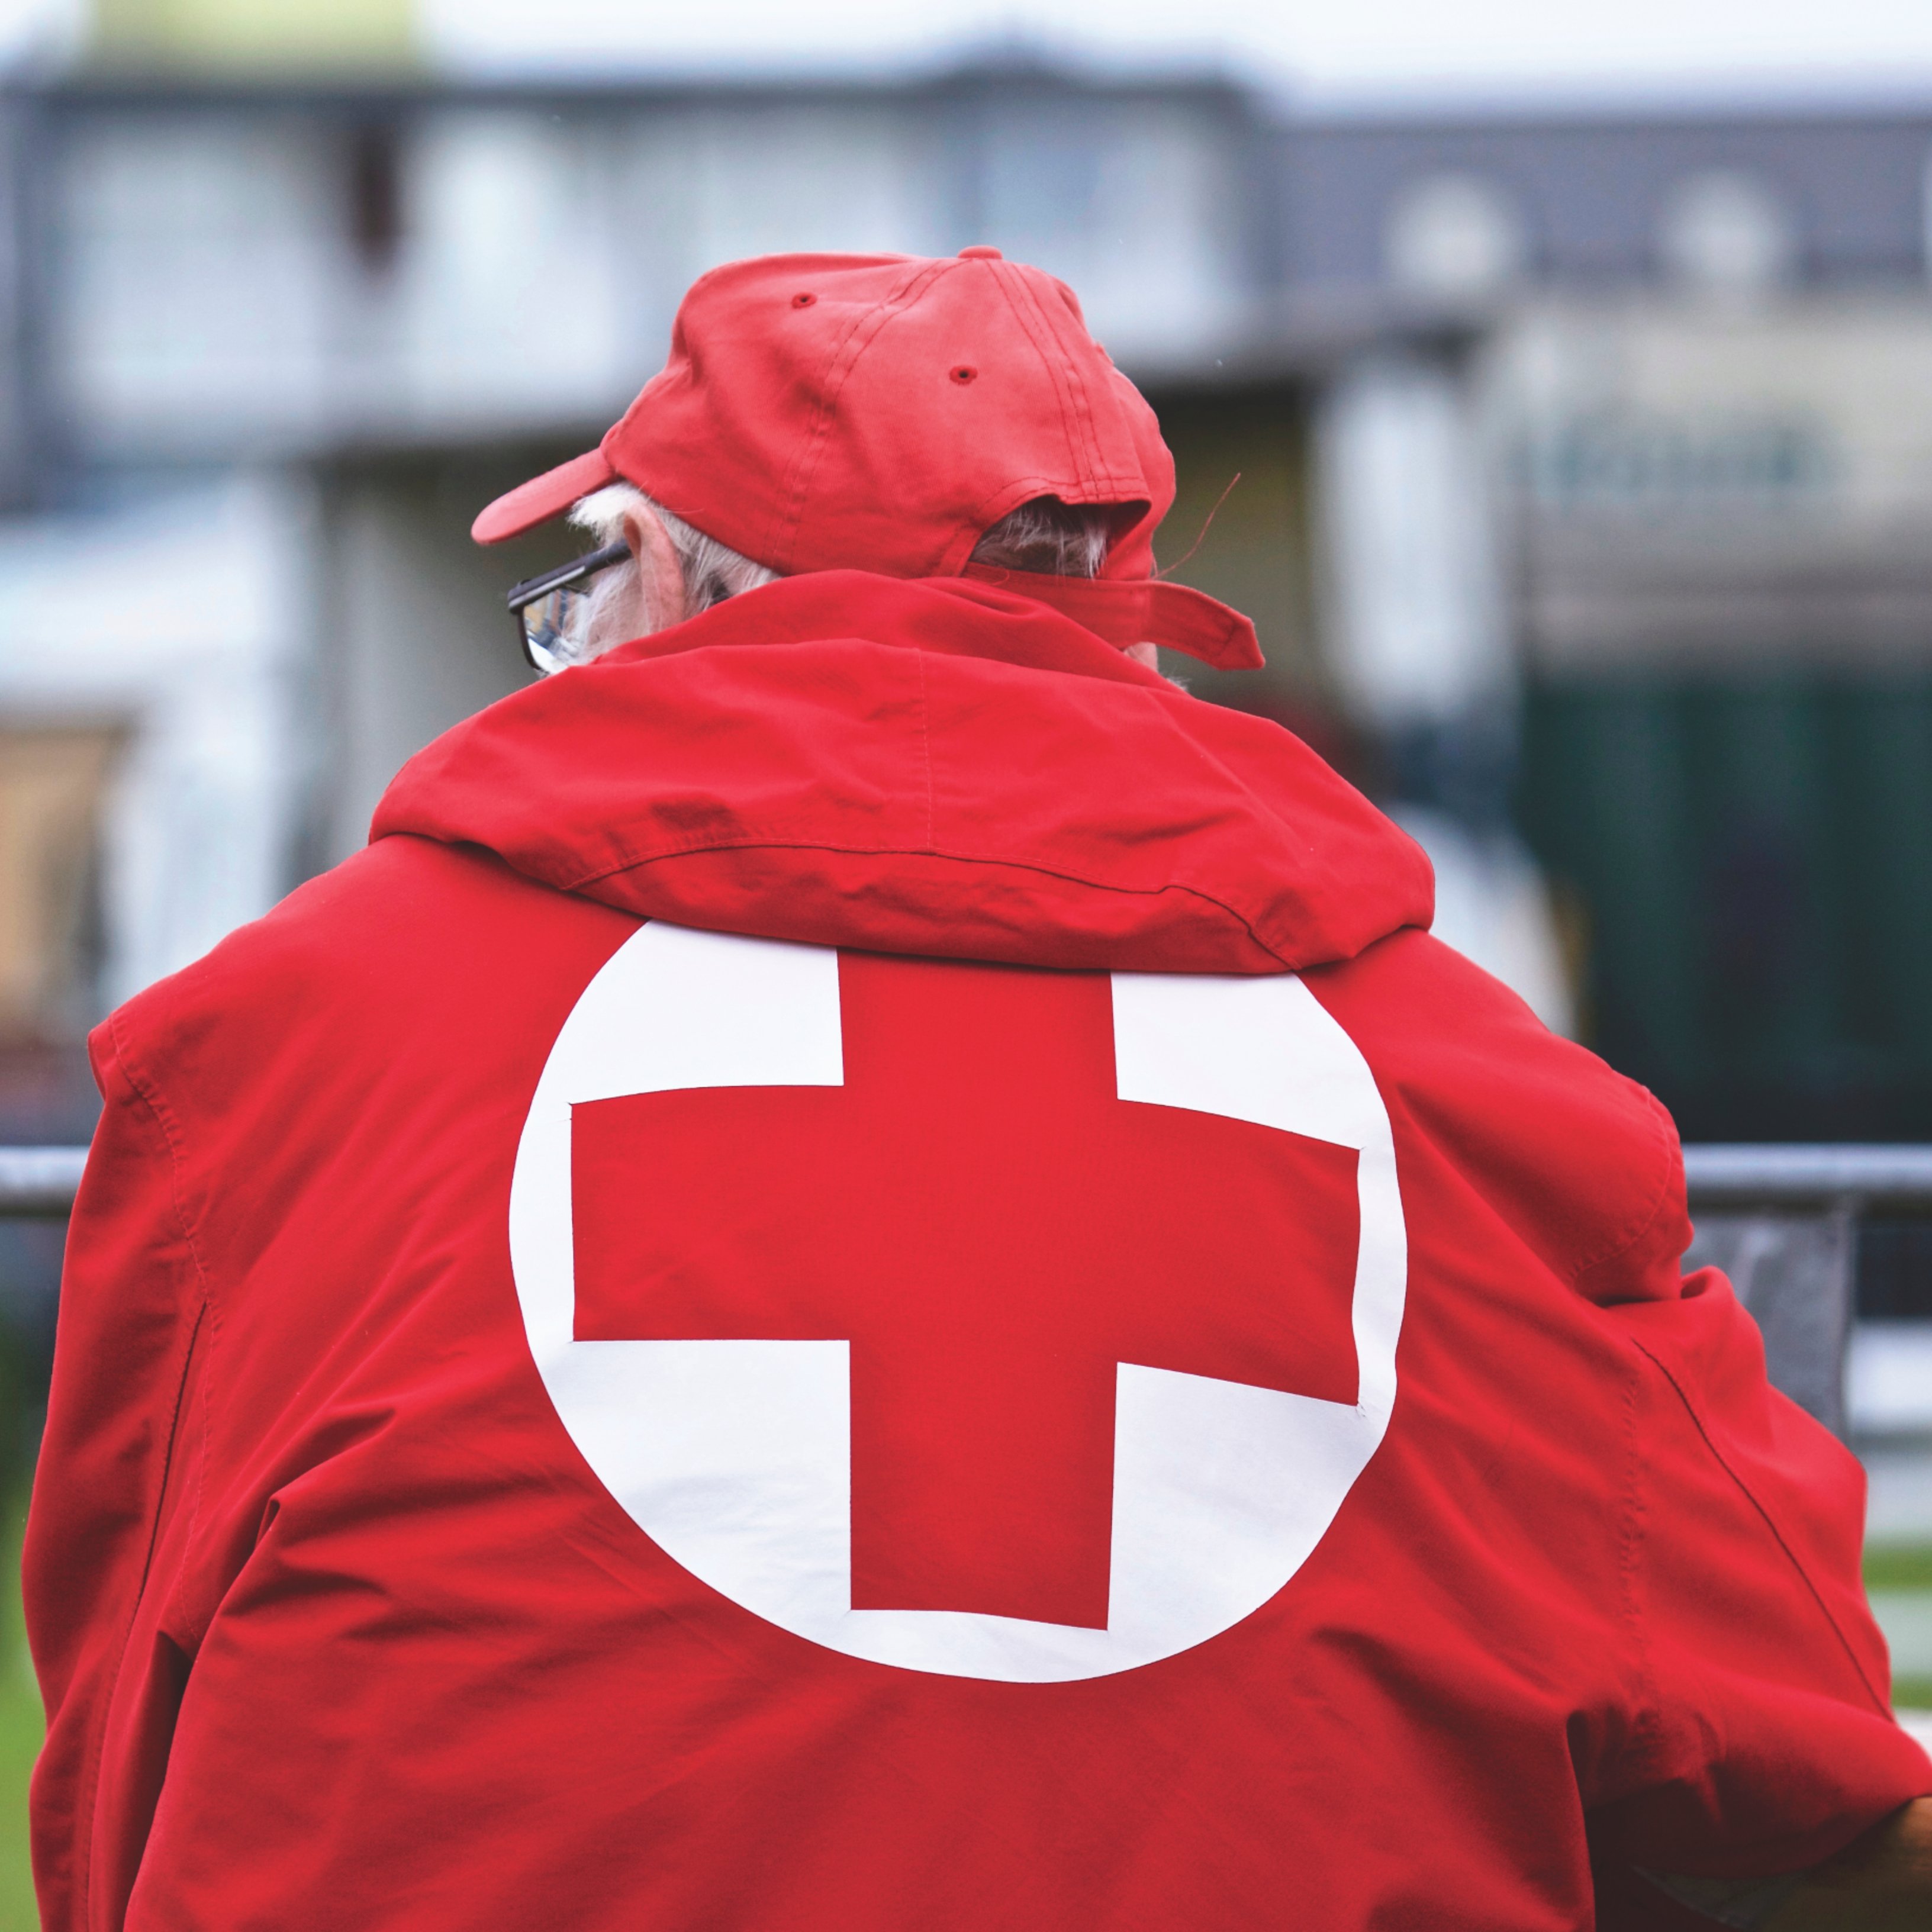 El 35% de las personas que ha atendido la Cruz Roja en la pandemia ha empeorado